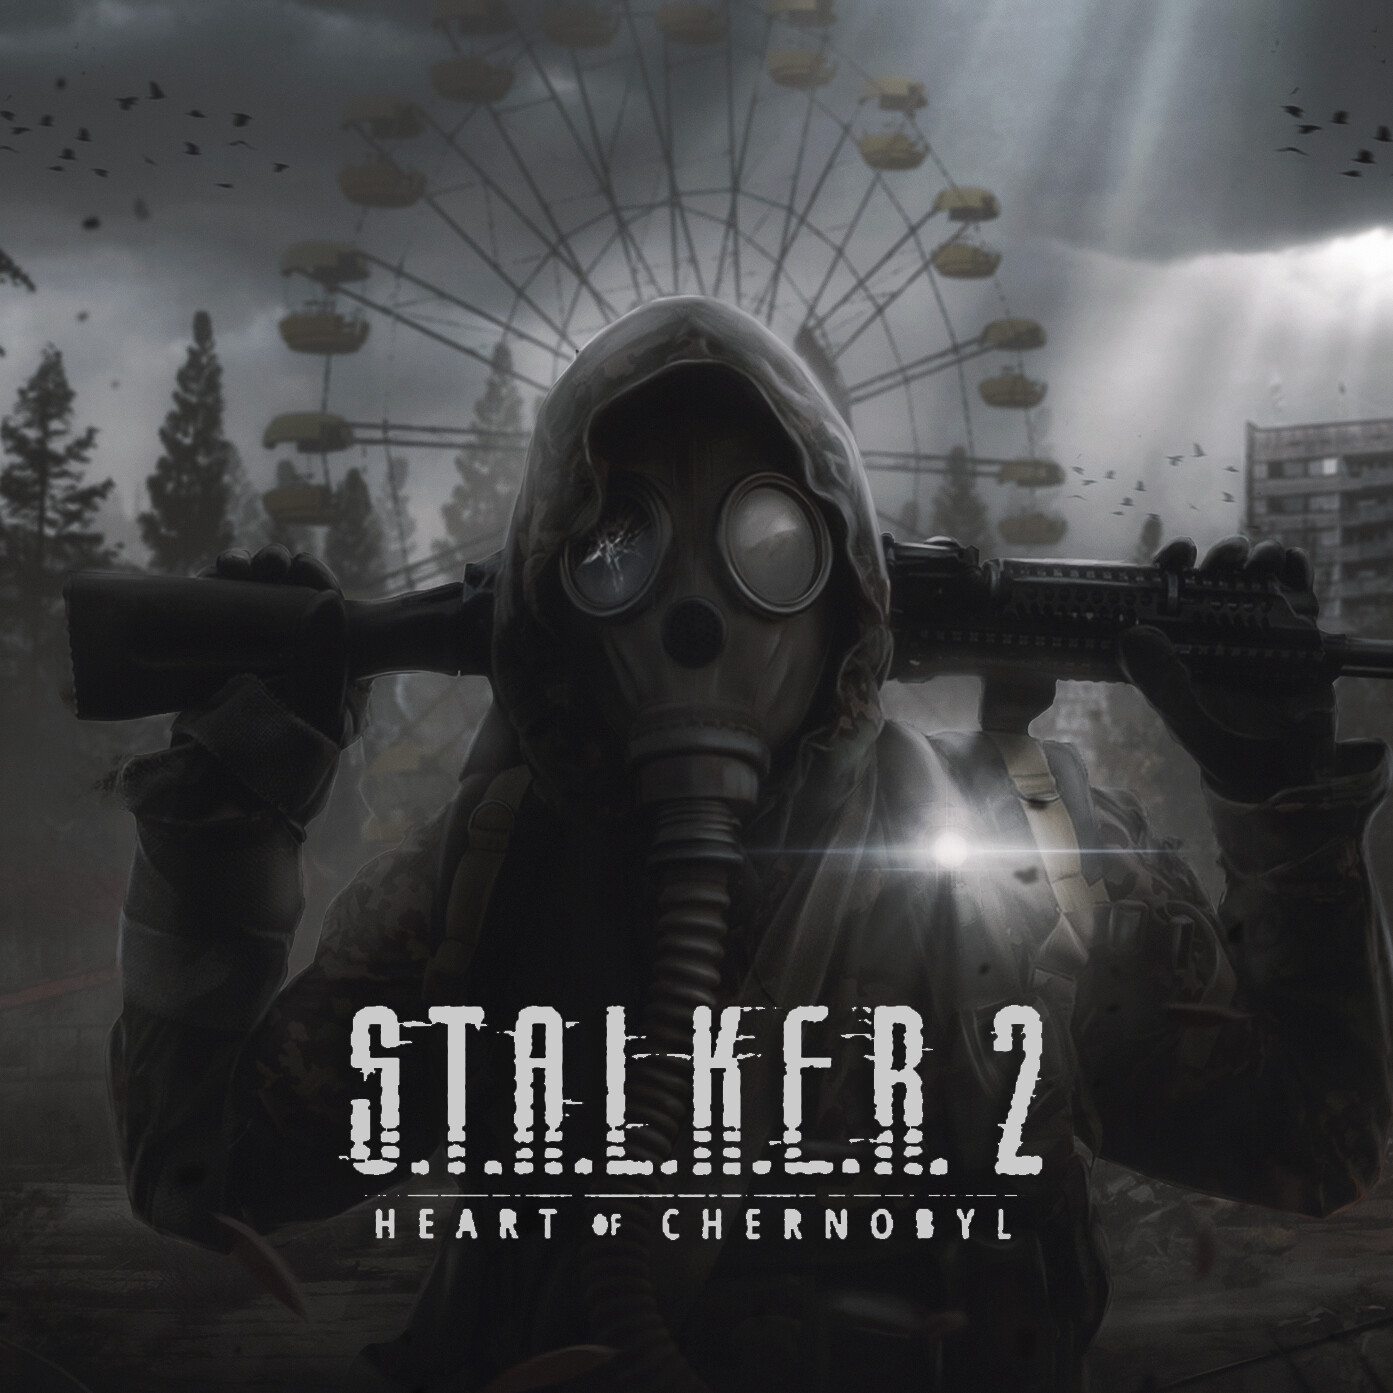 Here's the S.T.A.L.K.E.R. 2: Heart of Chernobyl boxart